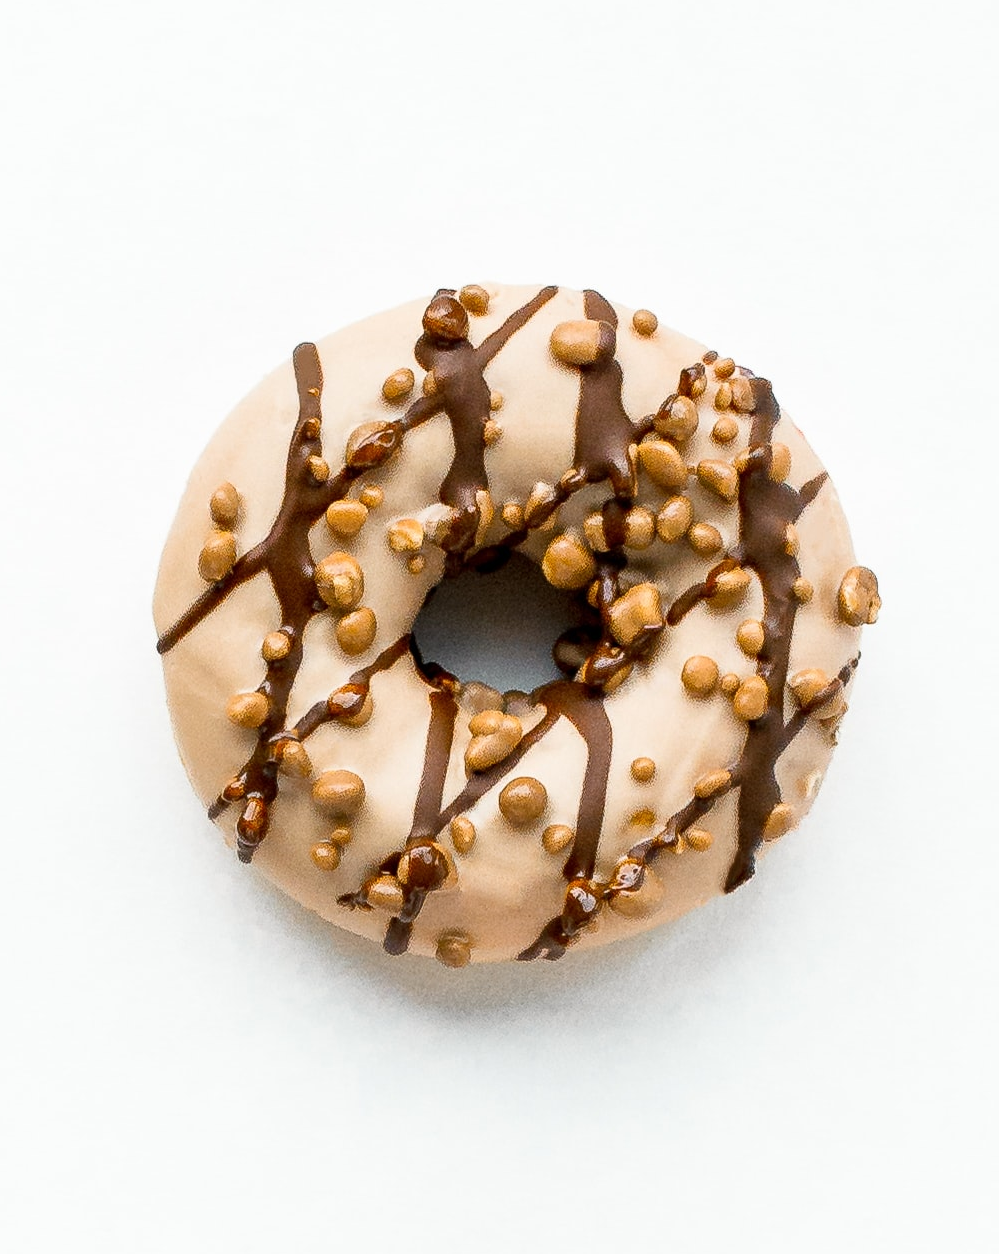 hazelnut glaze donut with chocolate drizzle and nuts